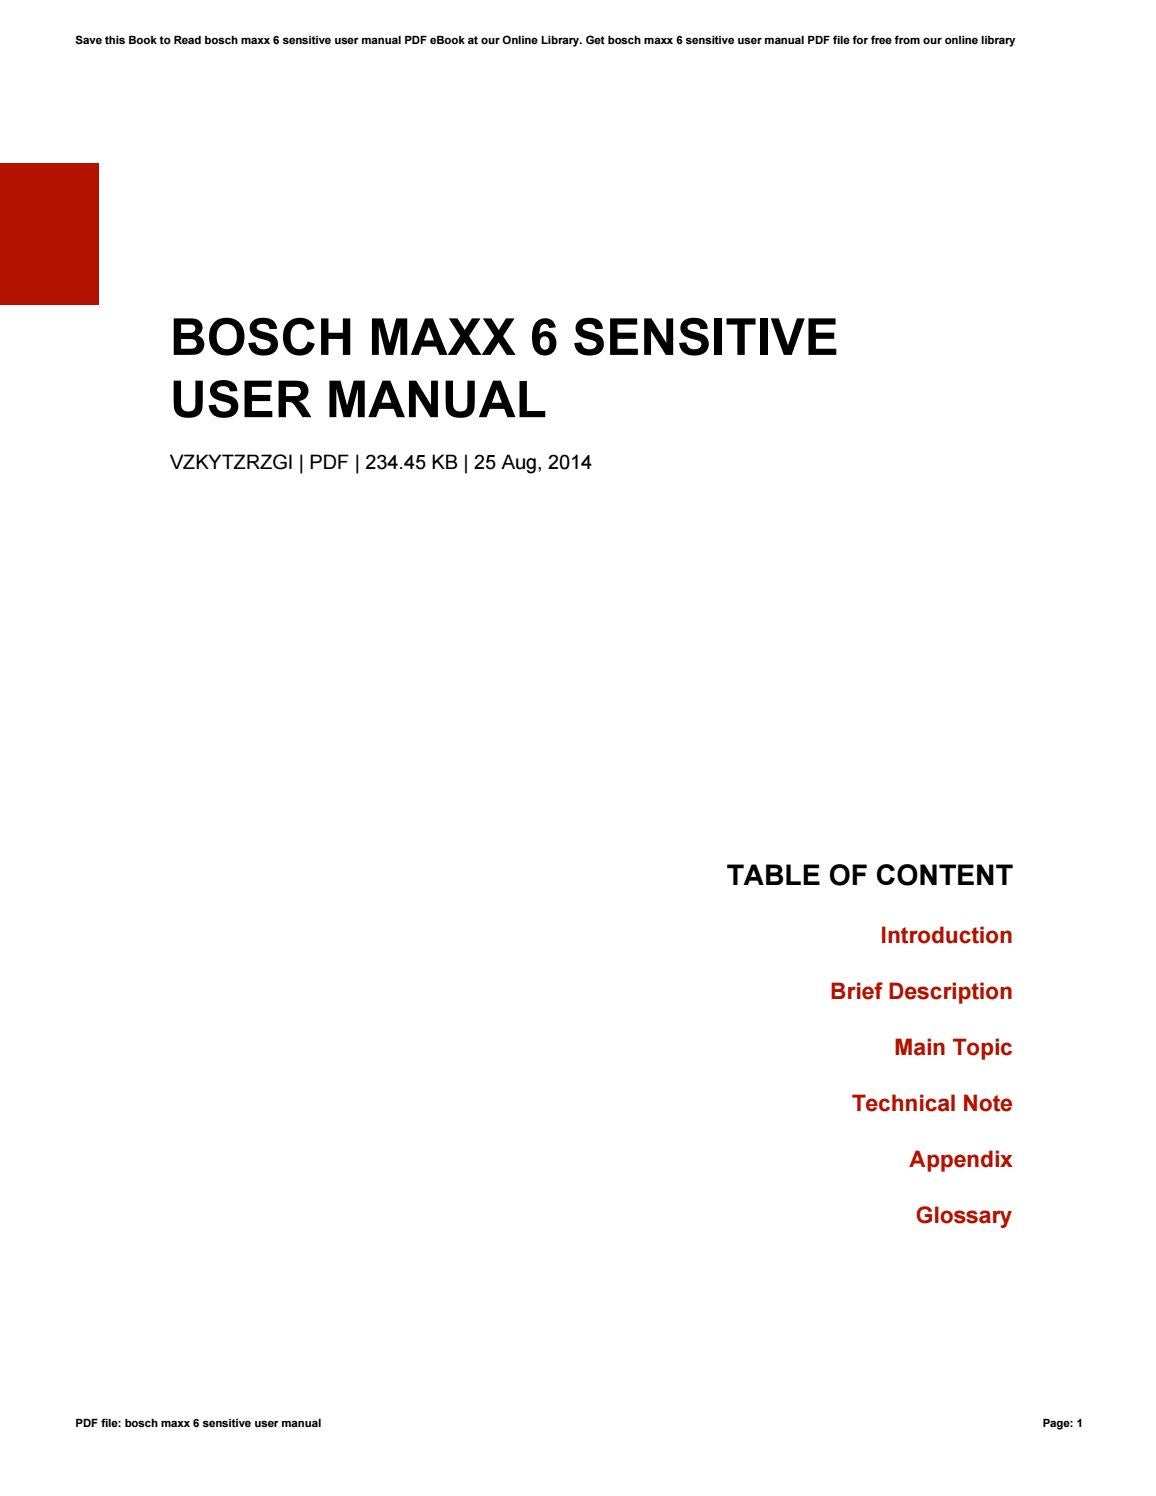 manual for bosch model shxm65w55n